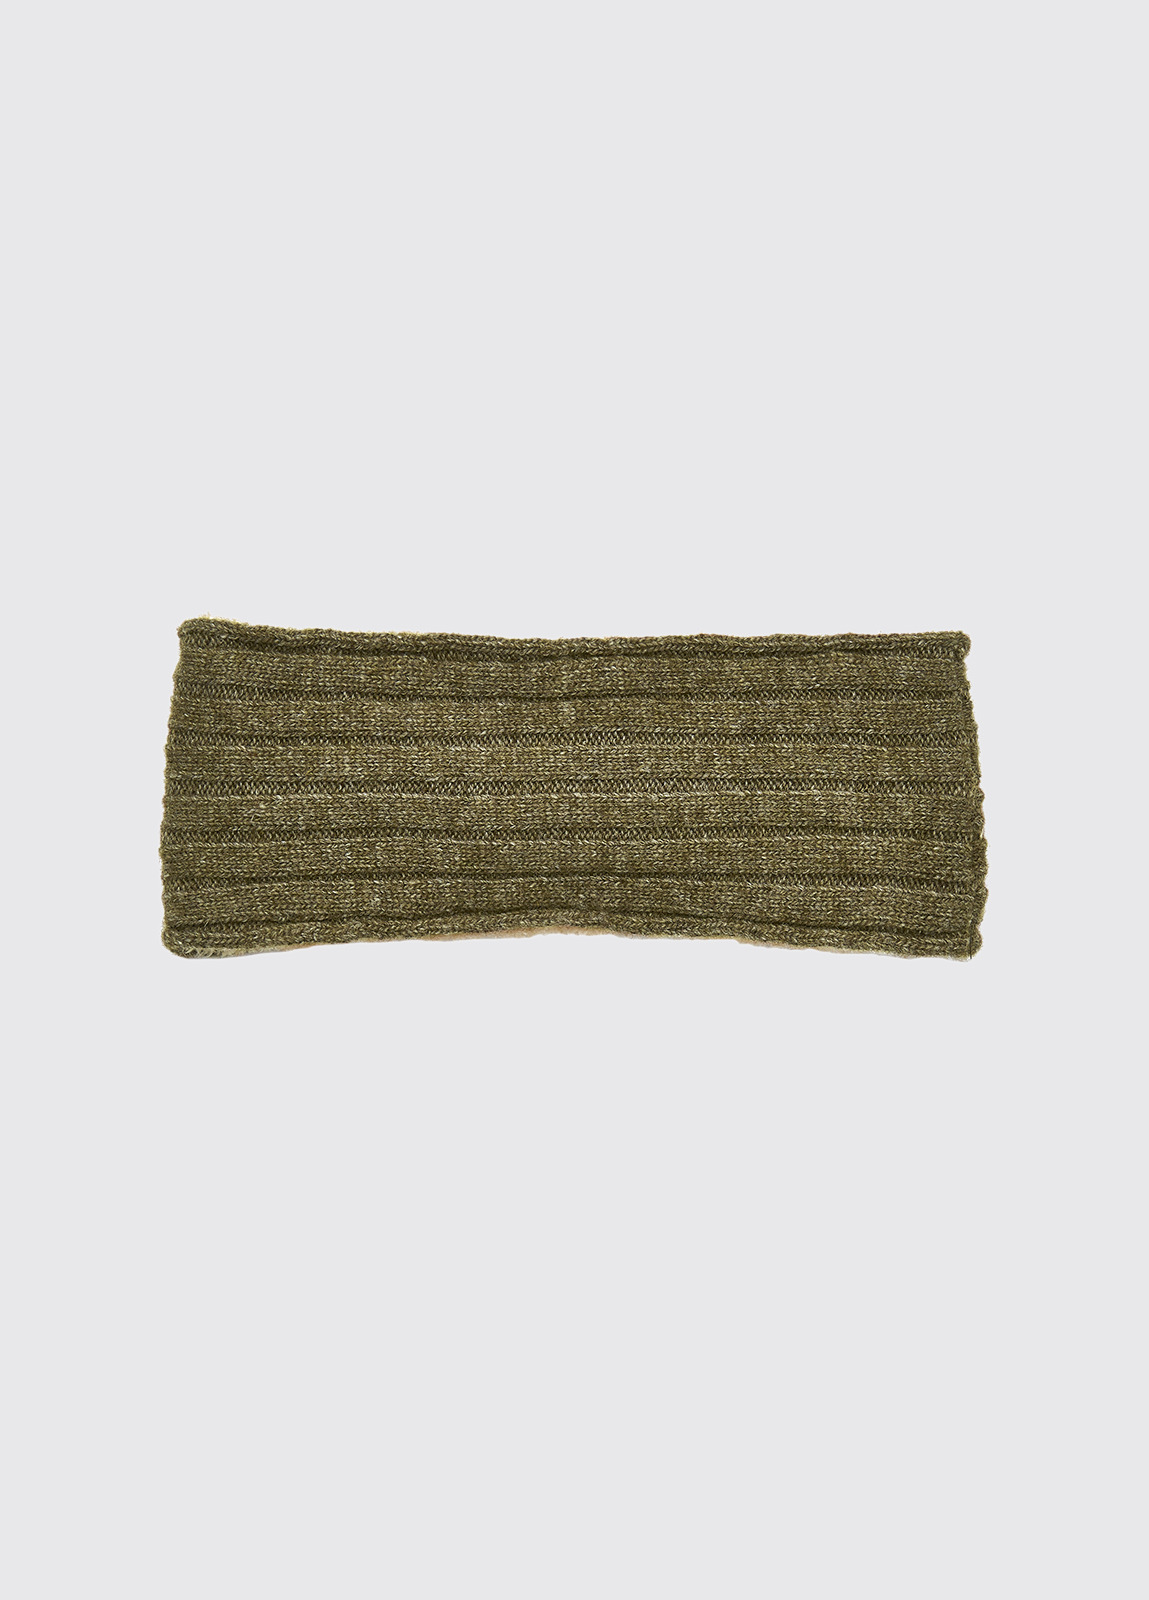 Foley Knitted Headband - Dusky Green